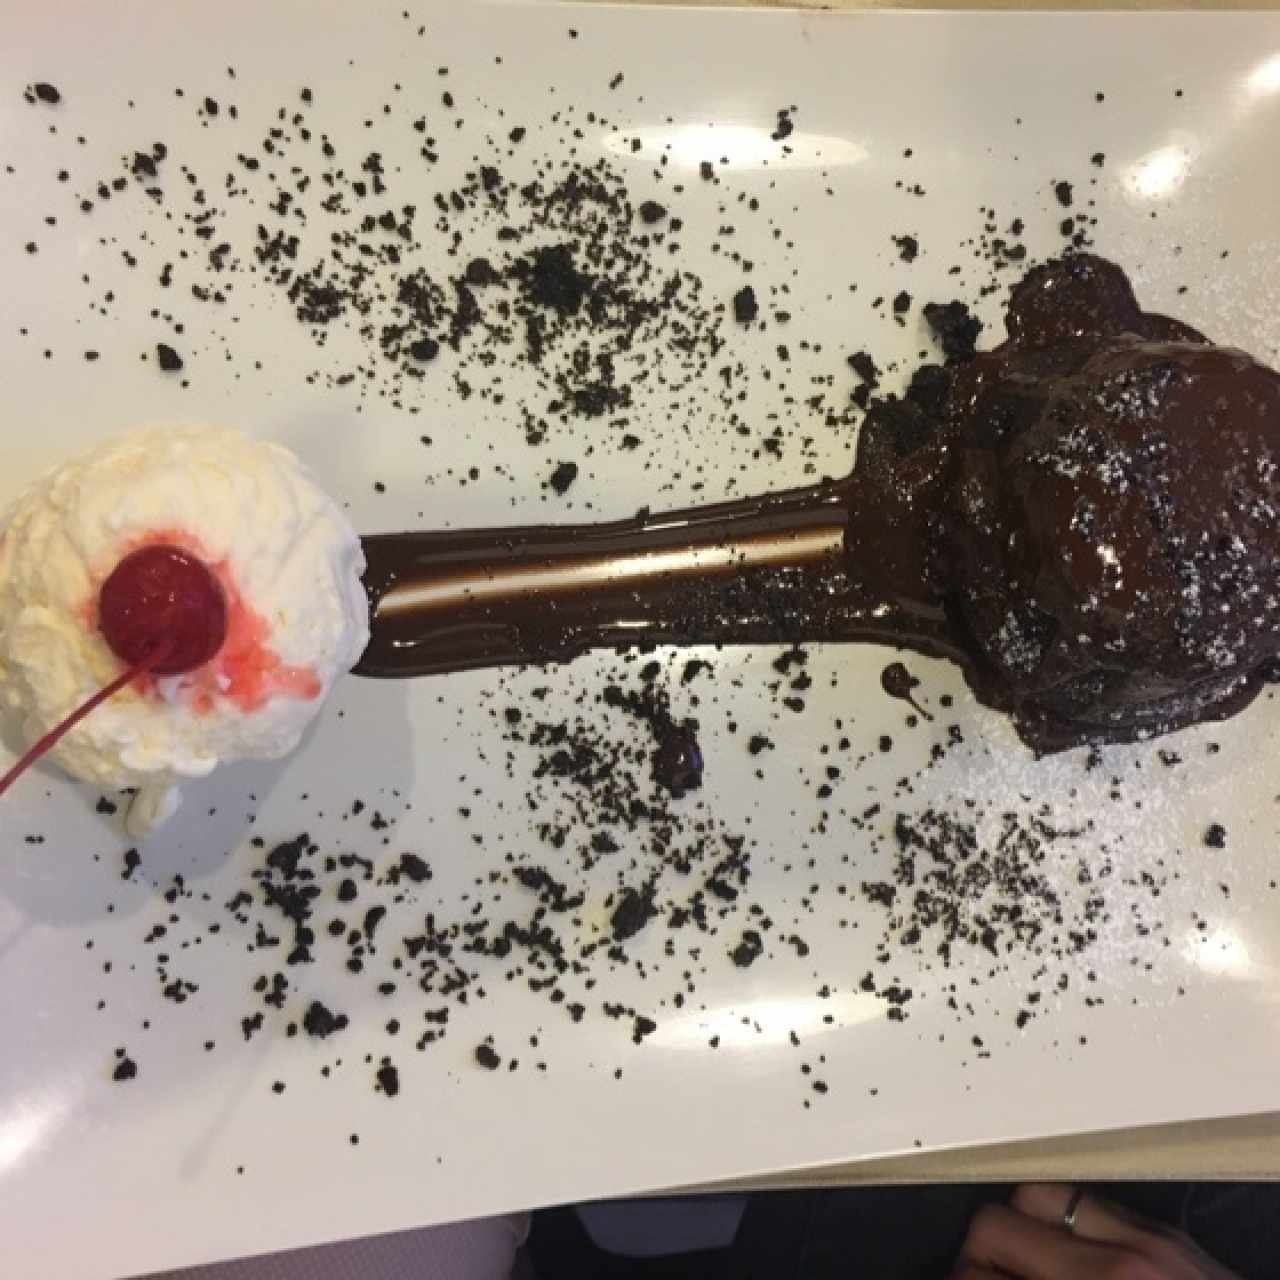 volcan de chocolate